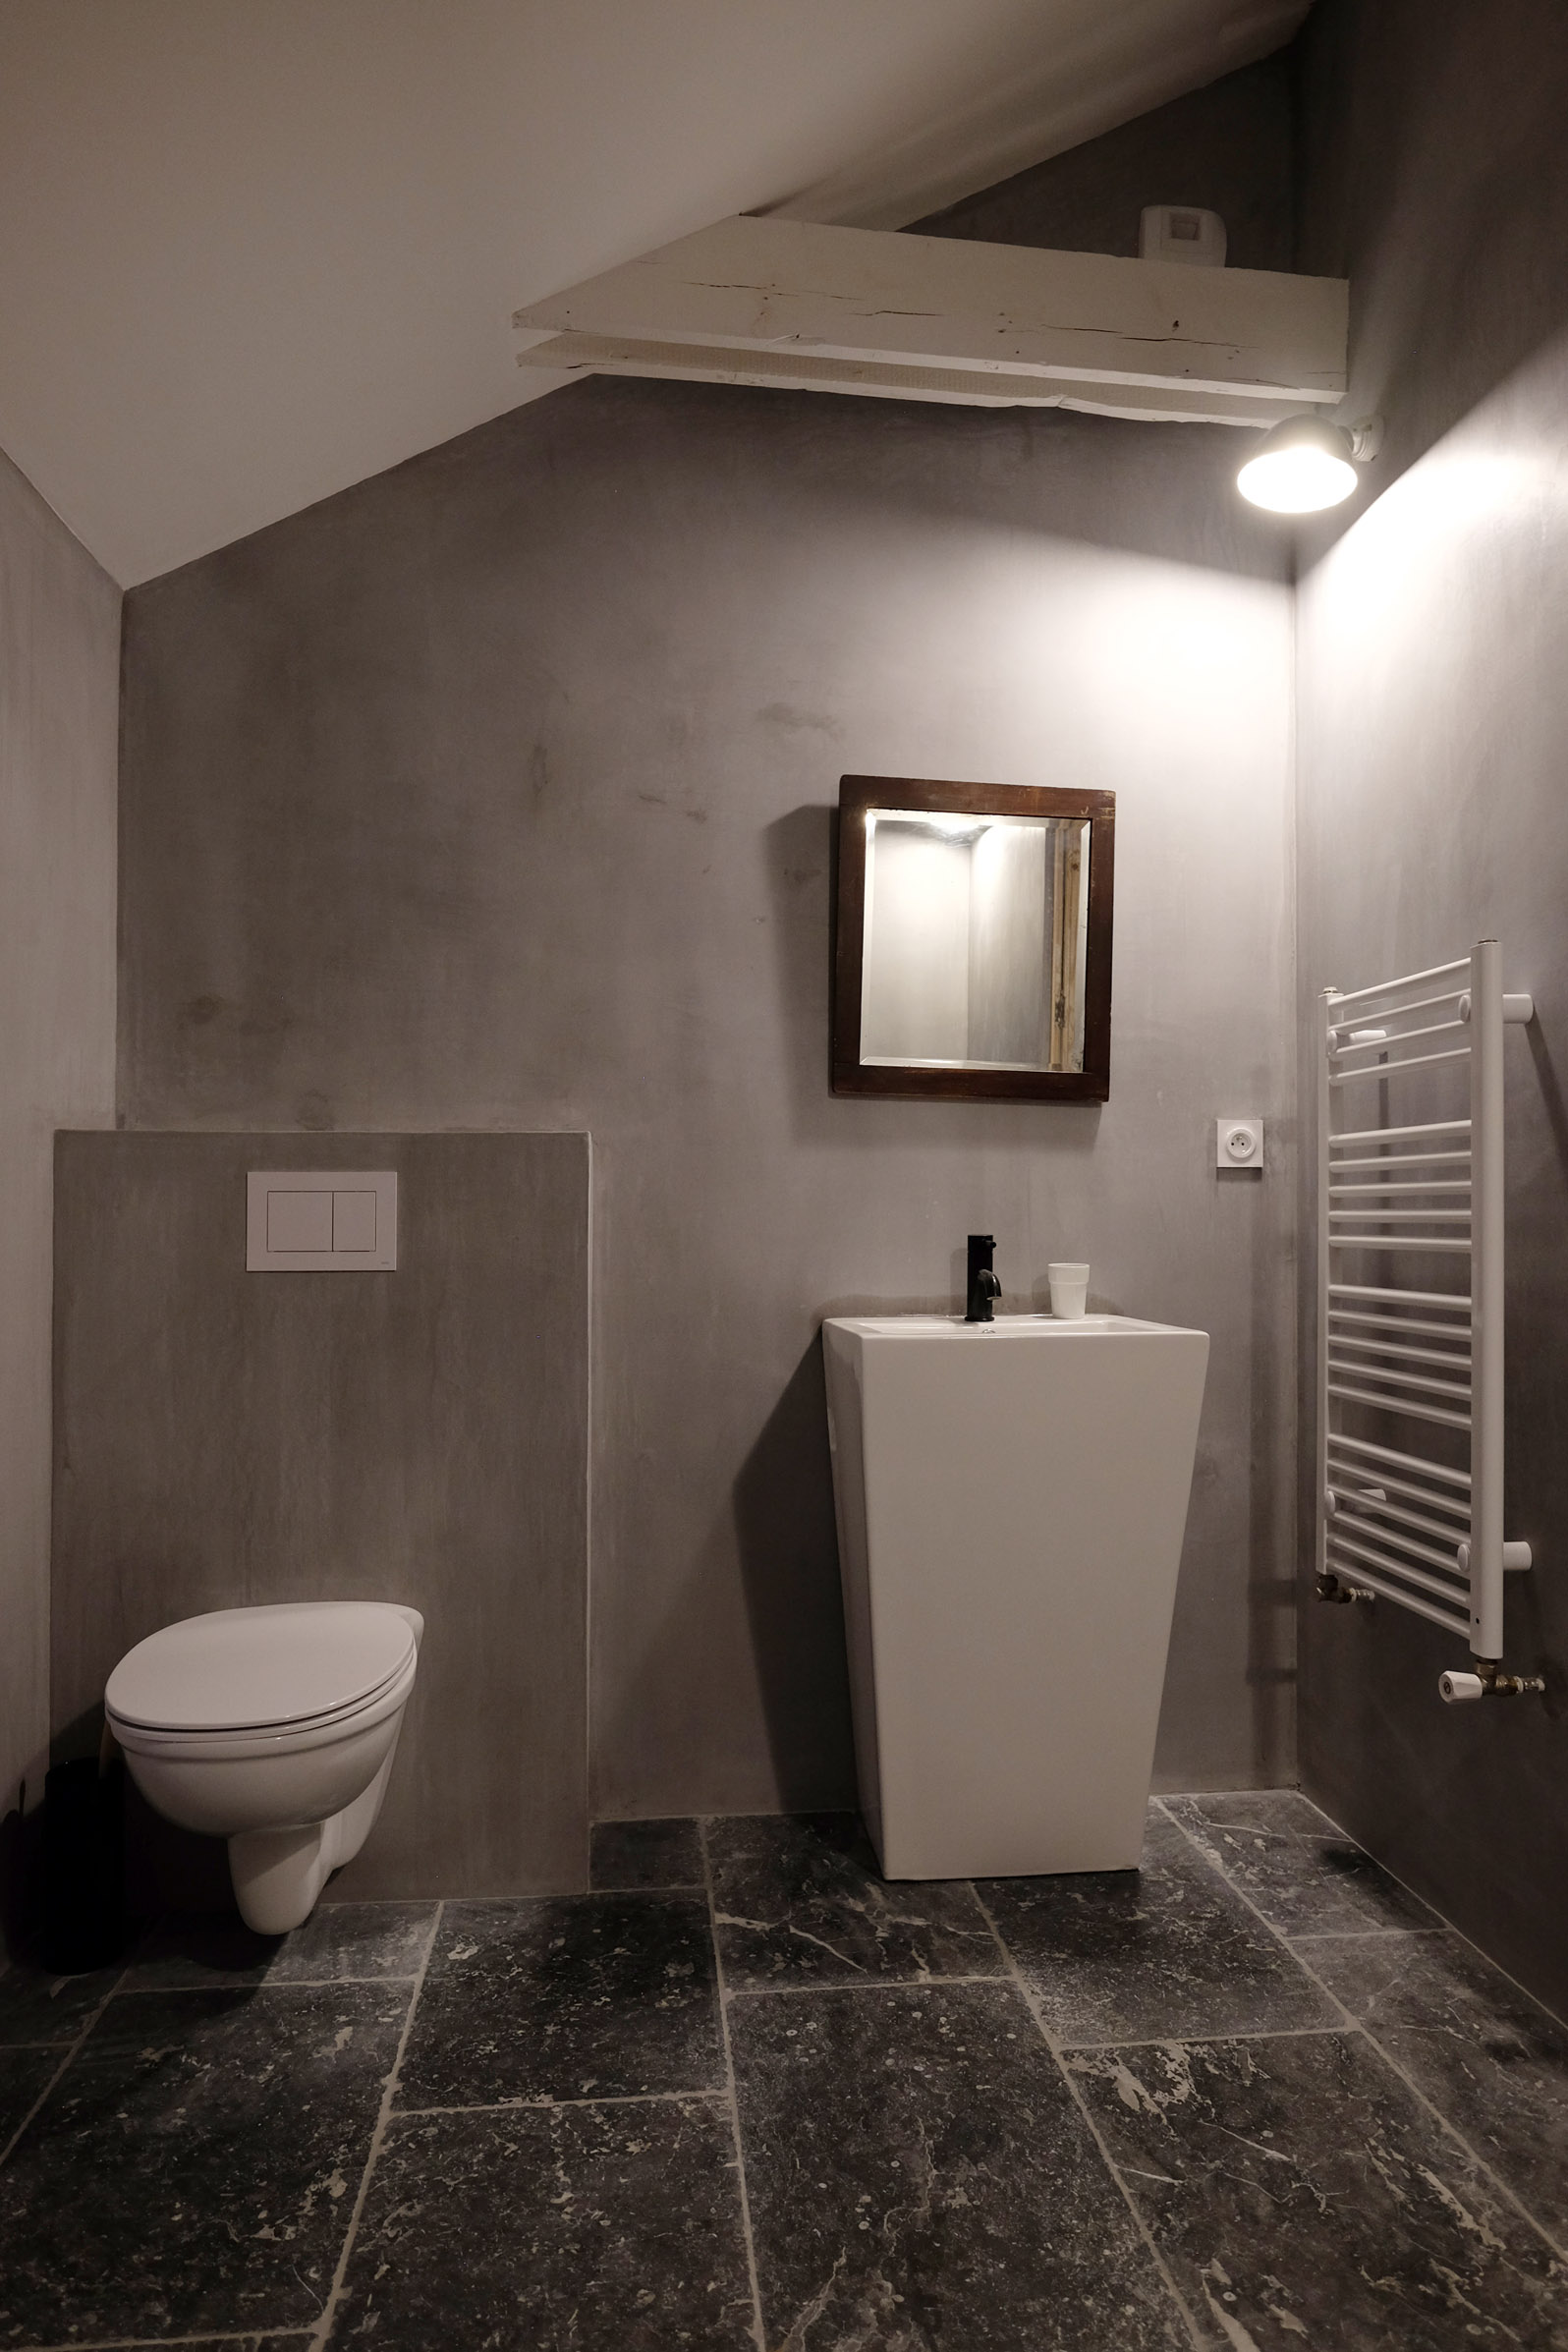 dinan bains salle de bains lavabo pierre gris lumiere mineral bois ancien vintage bretagne